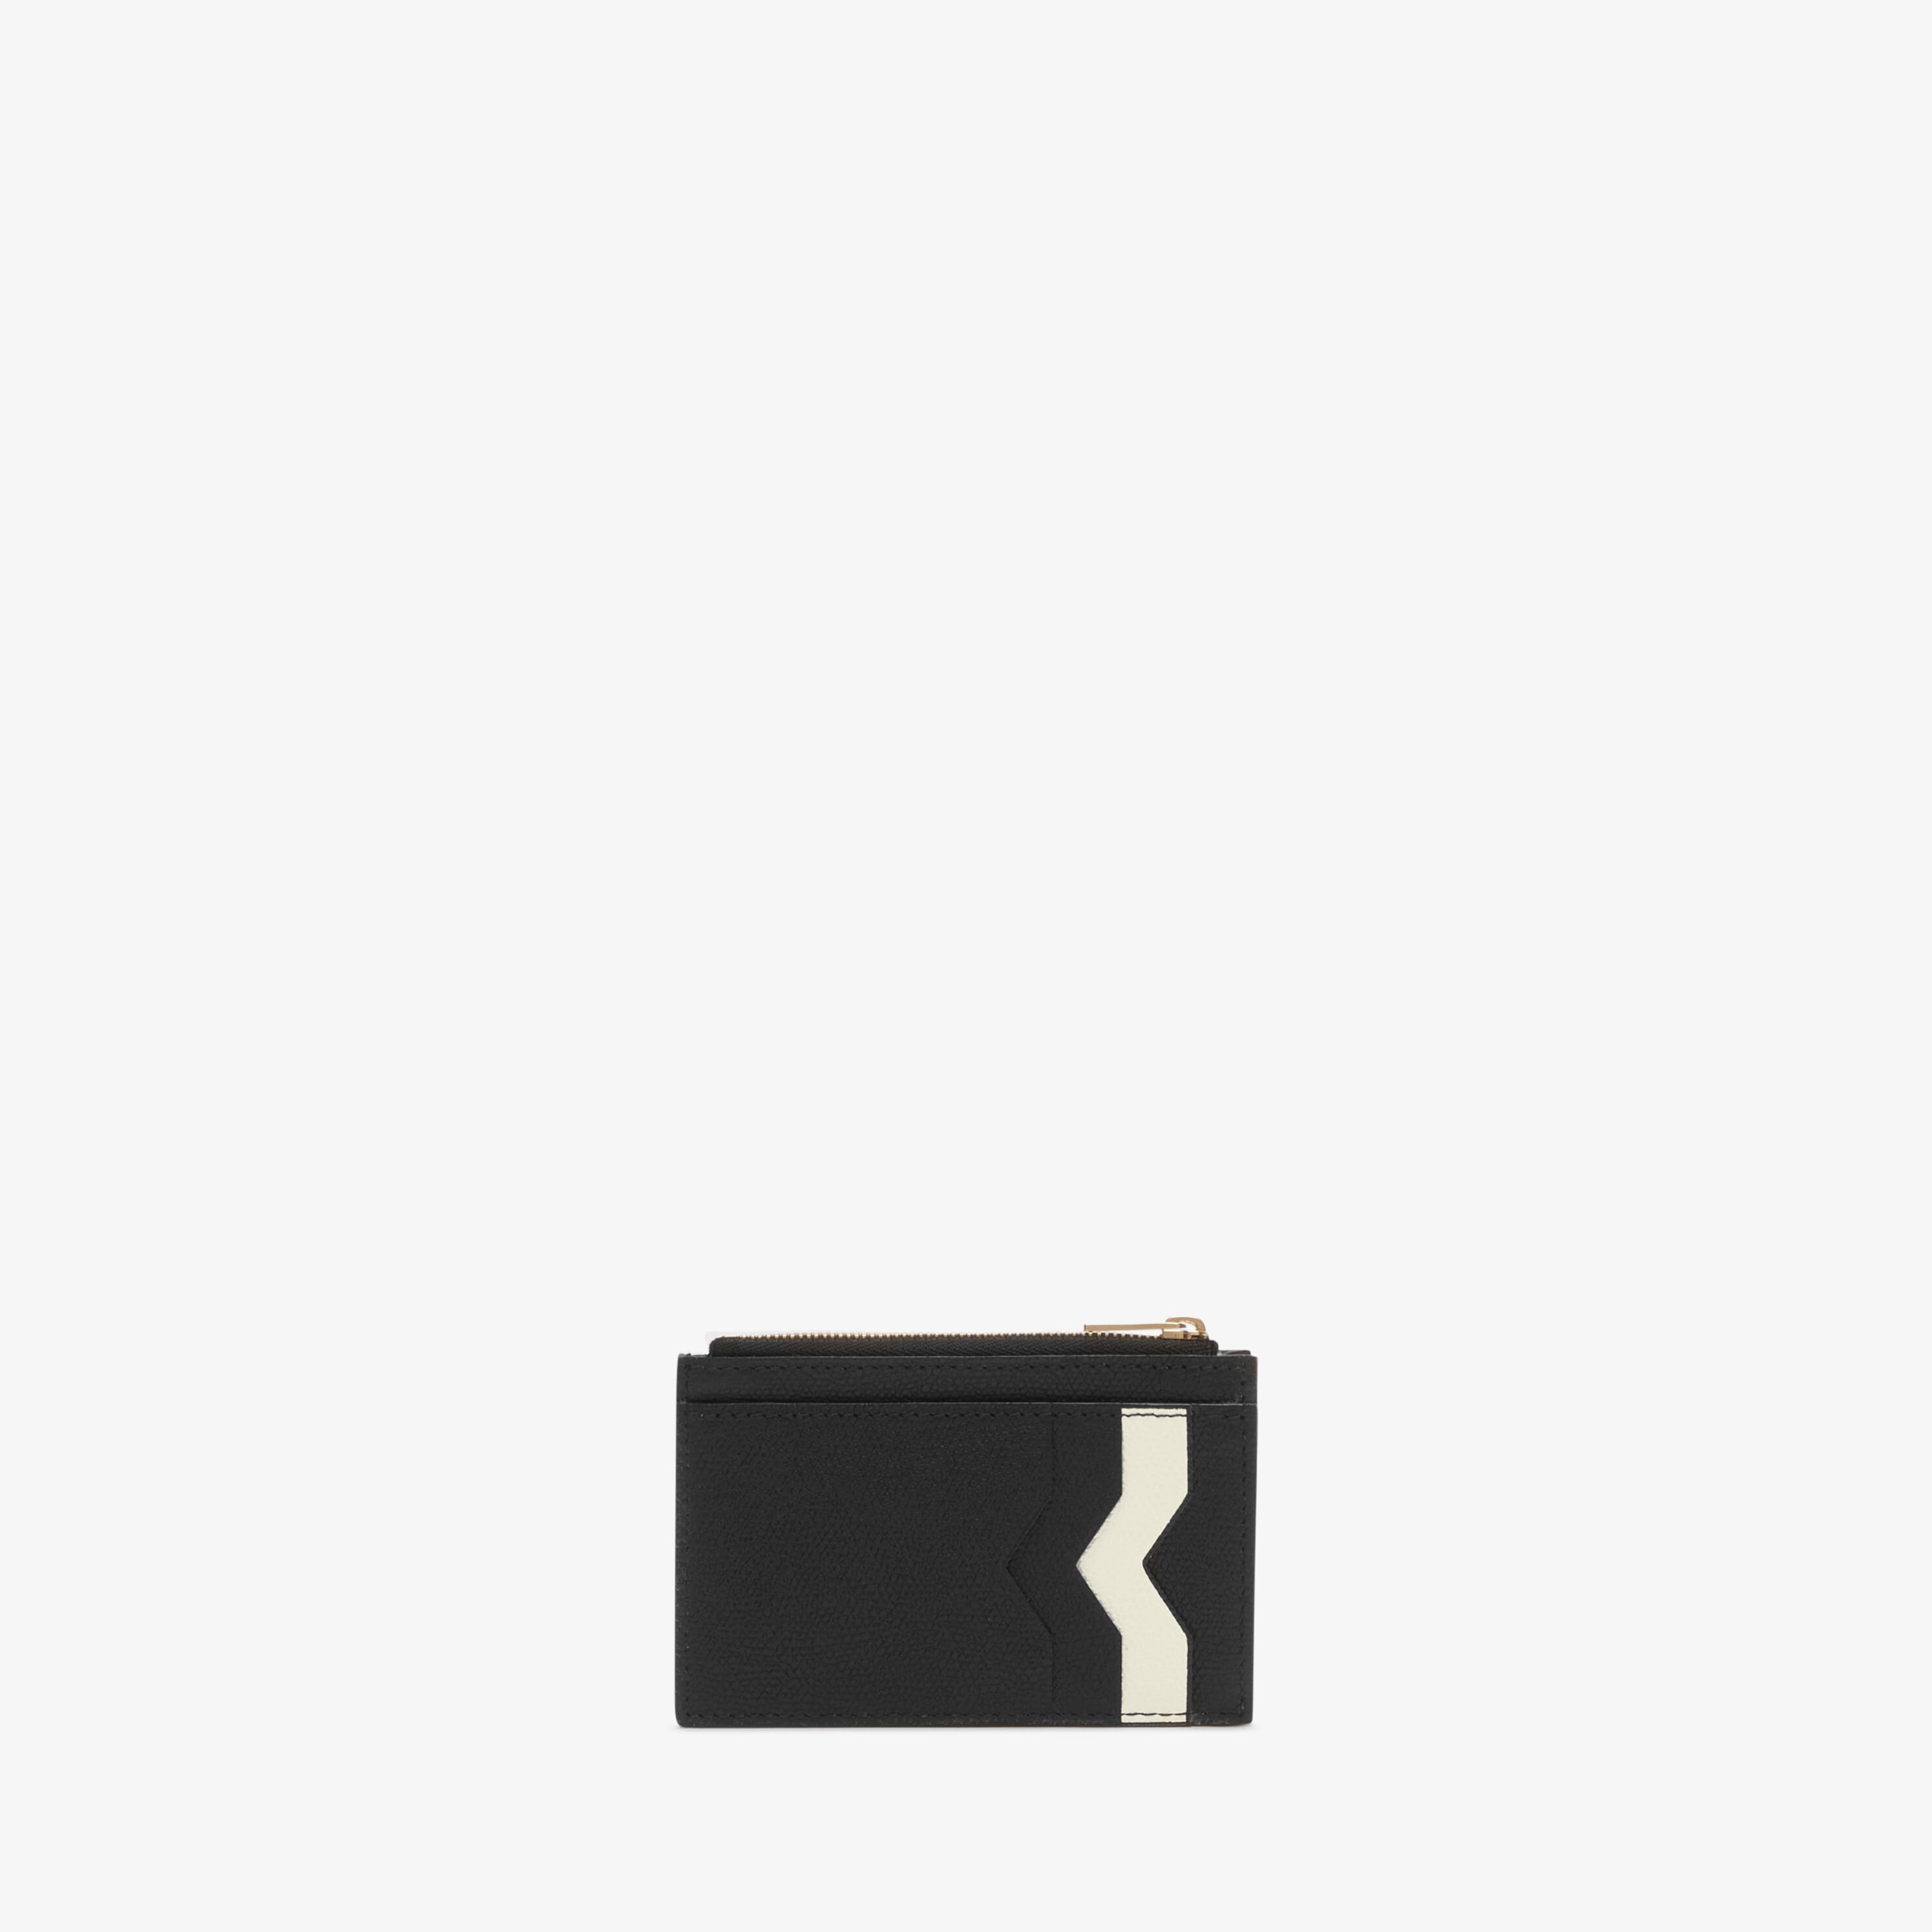 Card Holder 3CC with Zip - Black/Pergamena White - Vitello VS - Valextra - 1